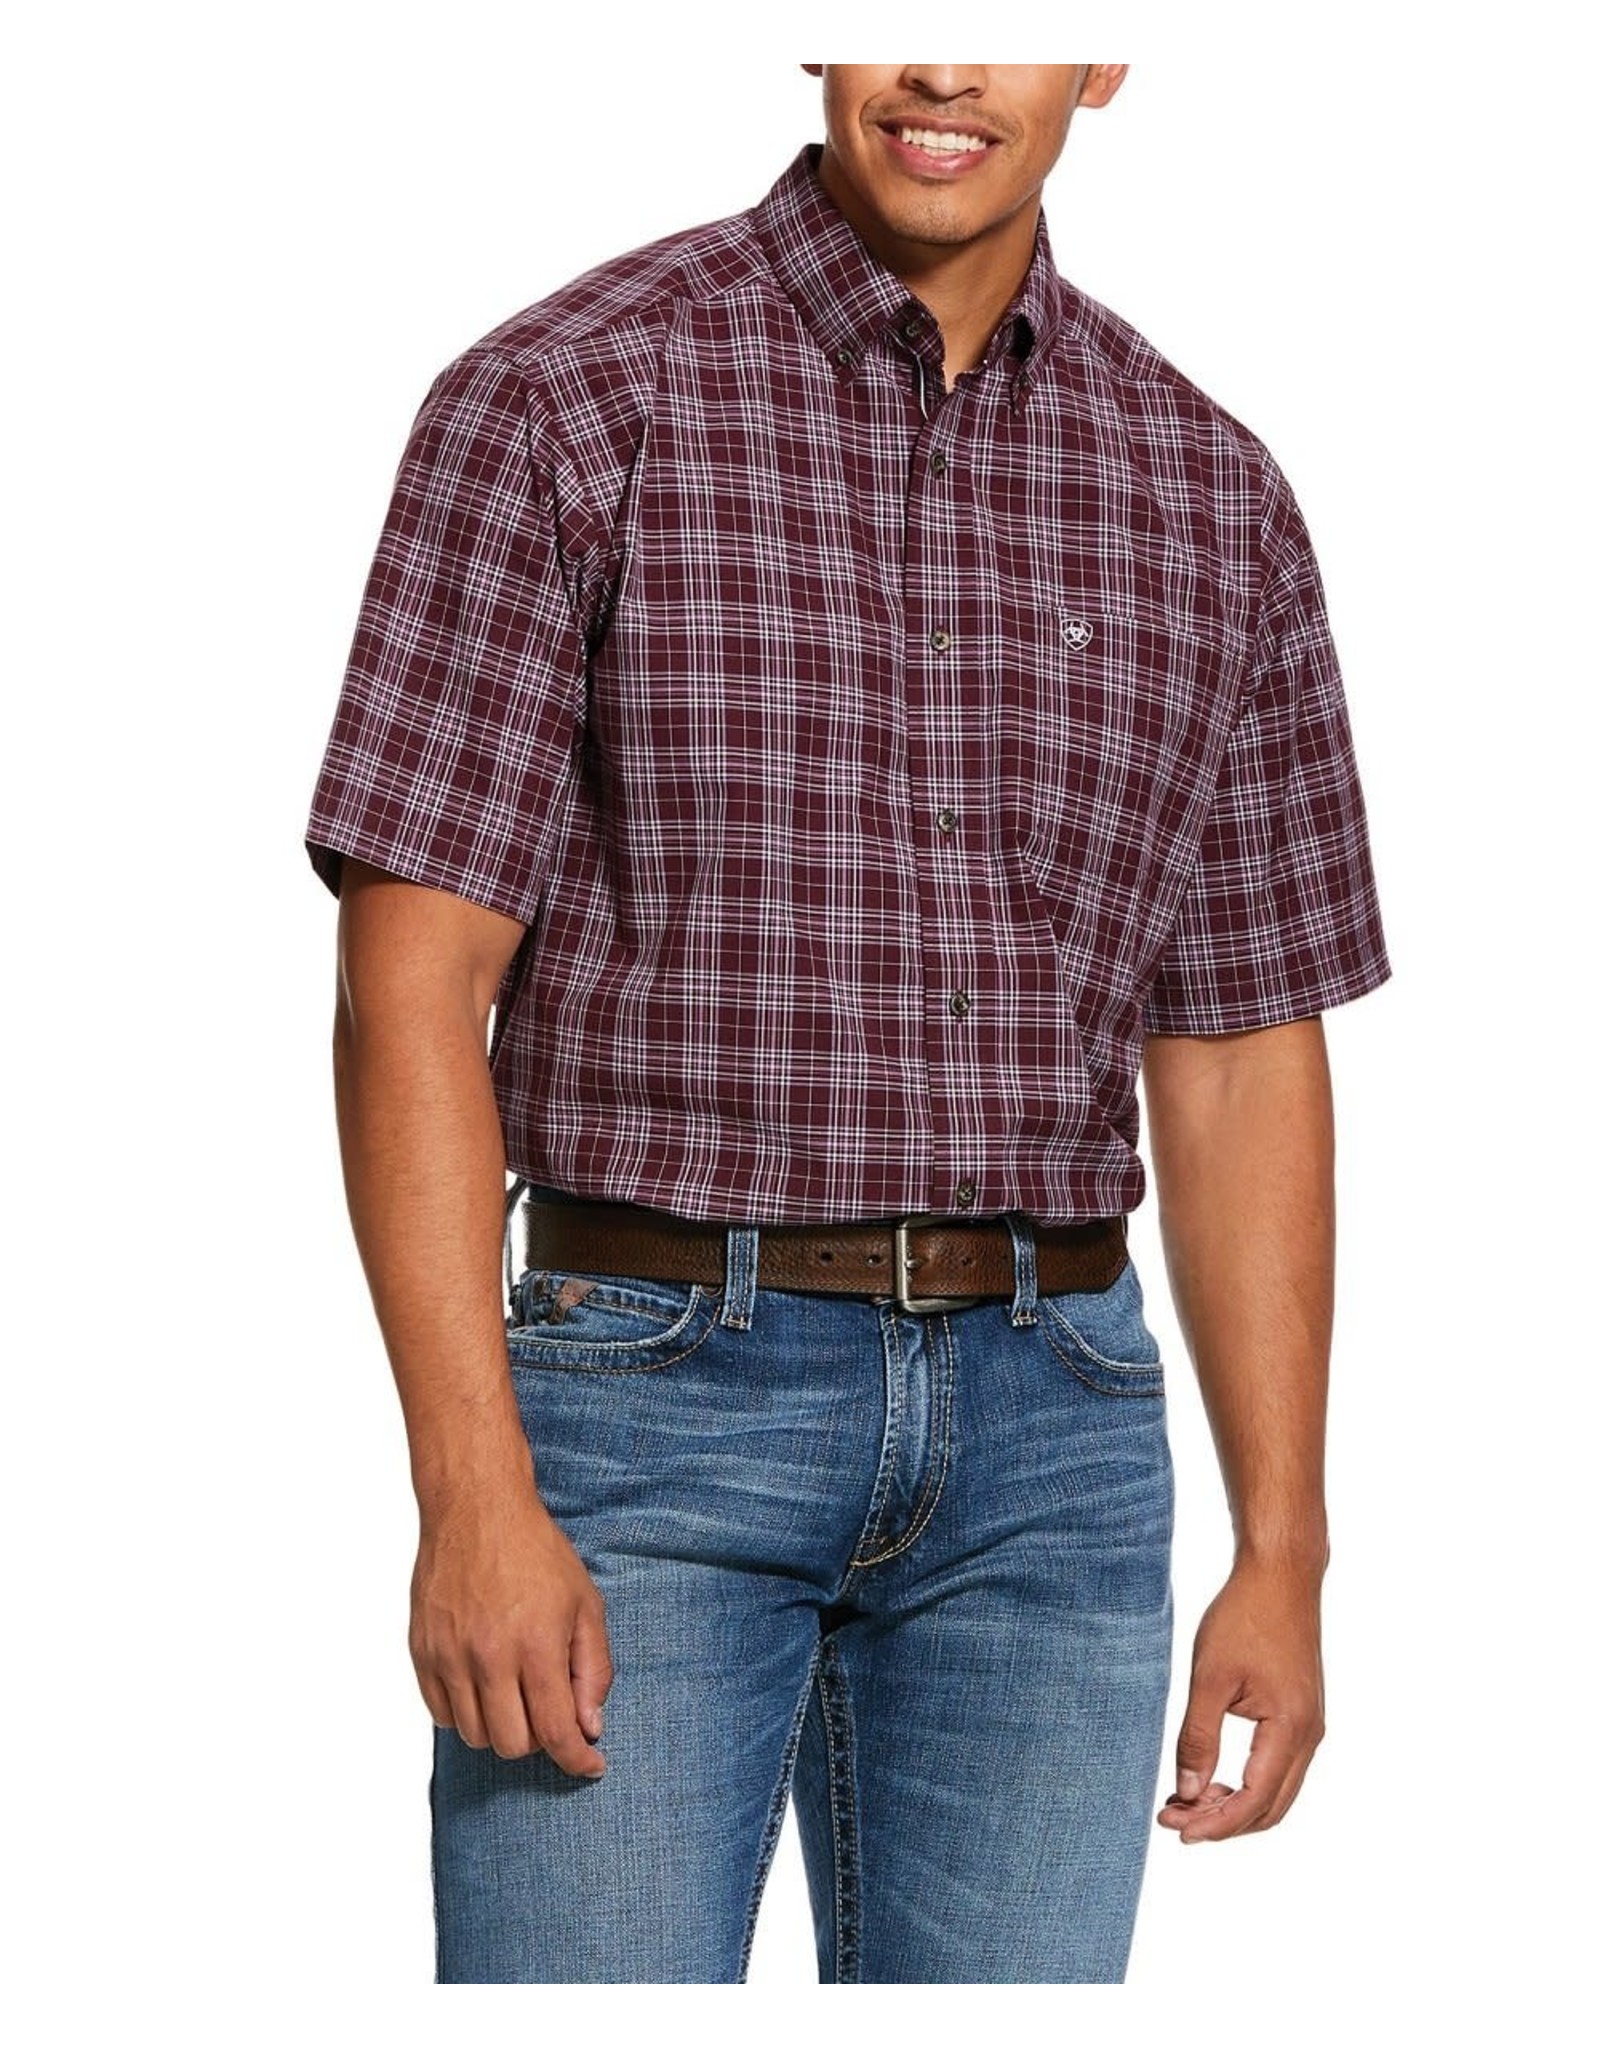 Ariat Ariat Men’s Fallbrook Plum 10030676 Short Sleeve Button Down Shirt Sz XL